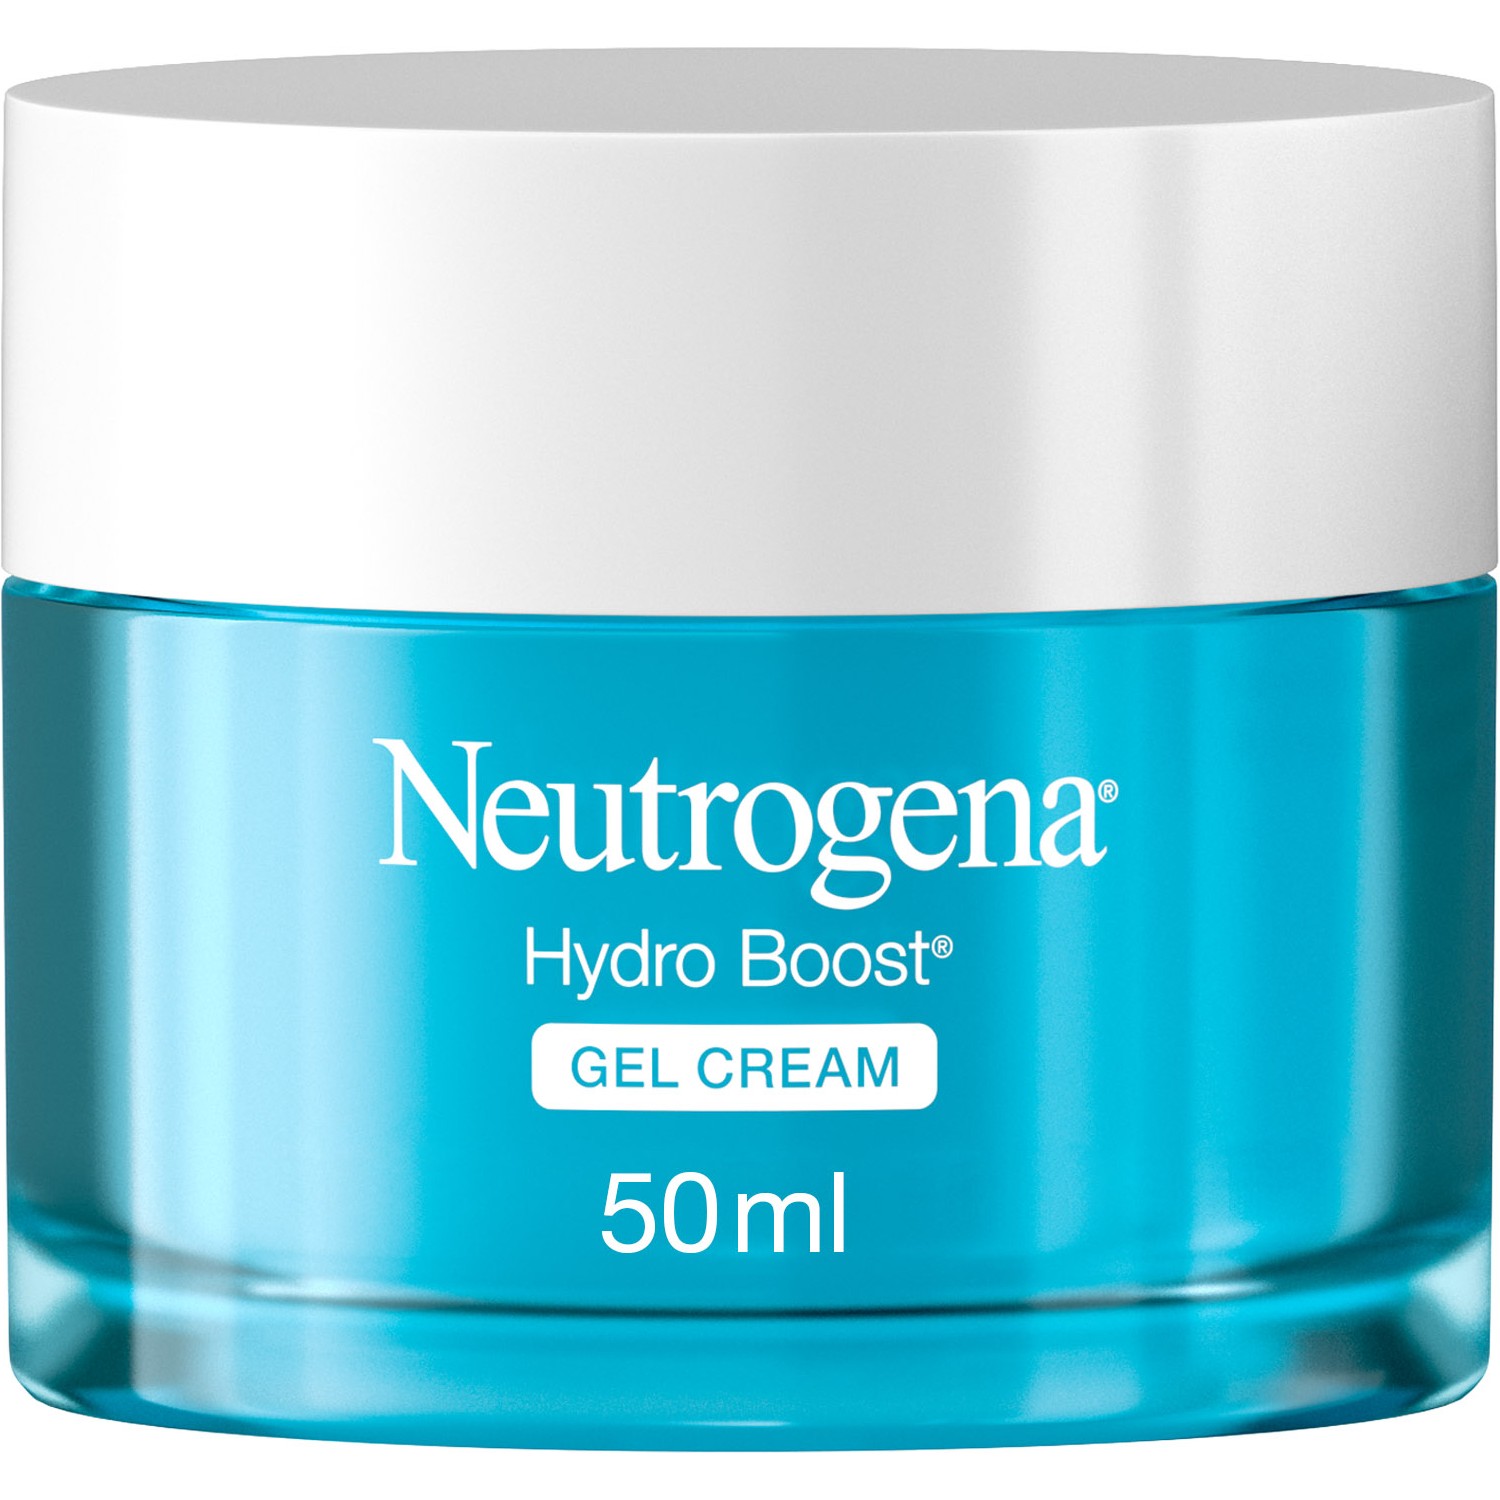 цена Крем-гель Neutrogena Hydro Boost увлажняющий для сухой кожи, 50 мл